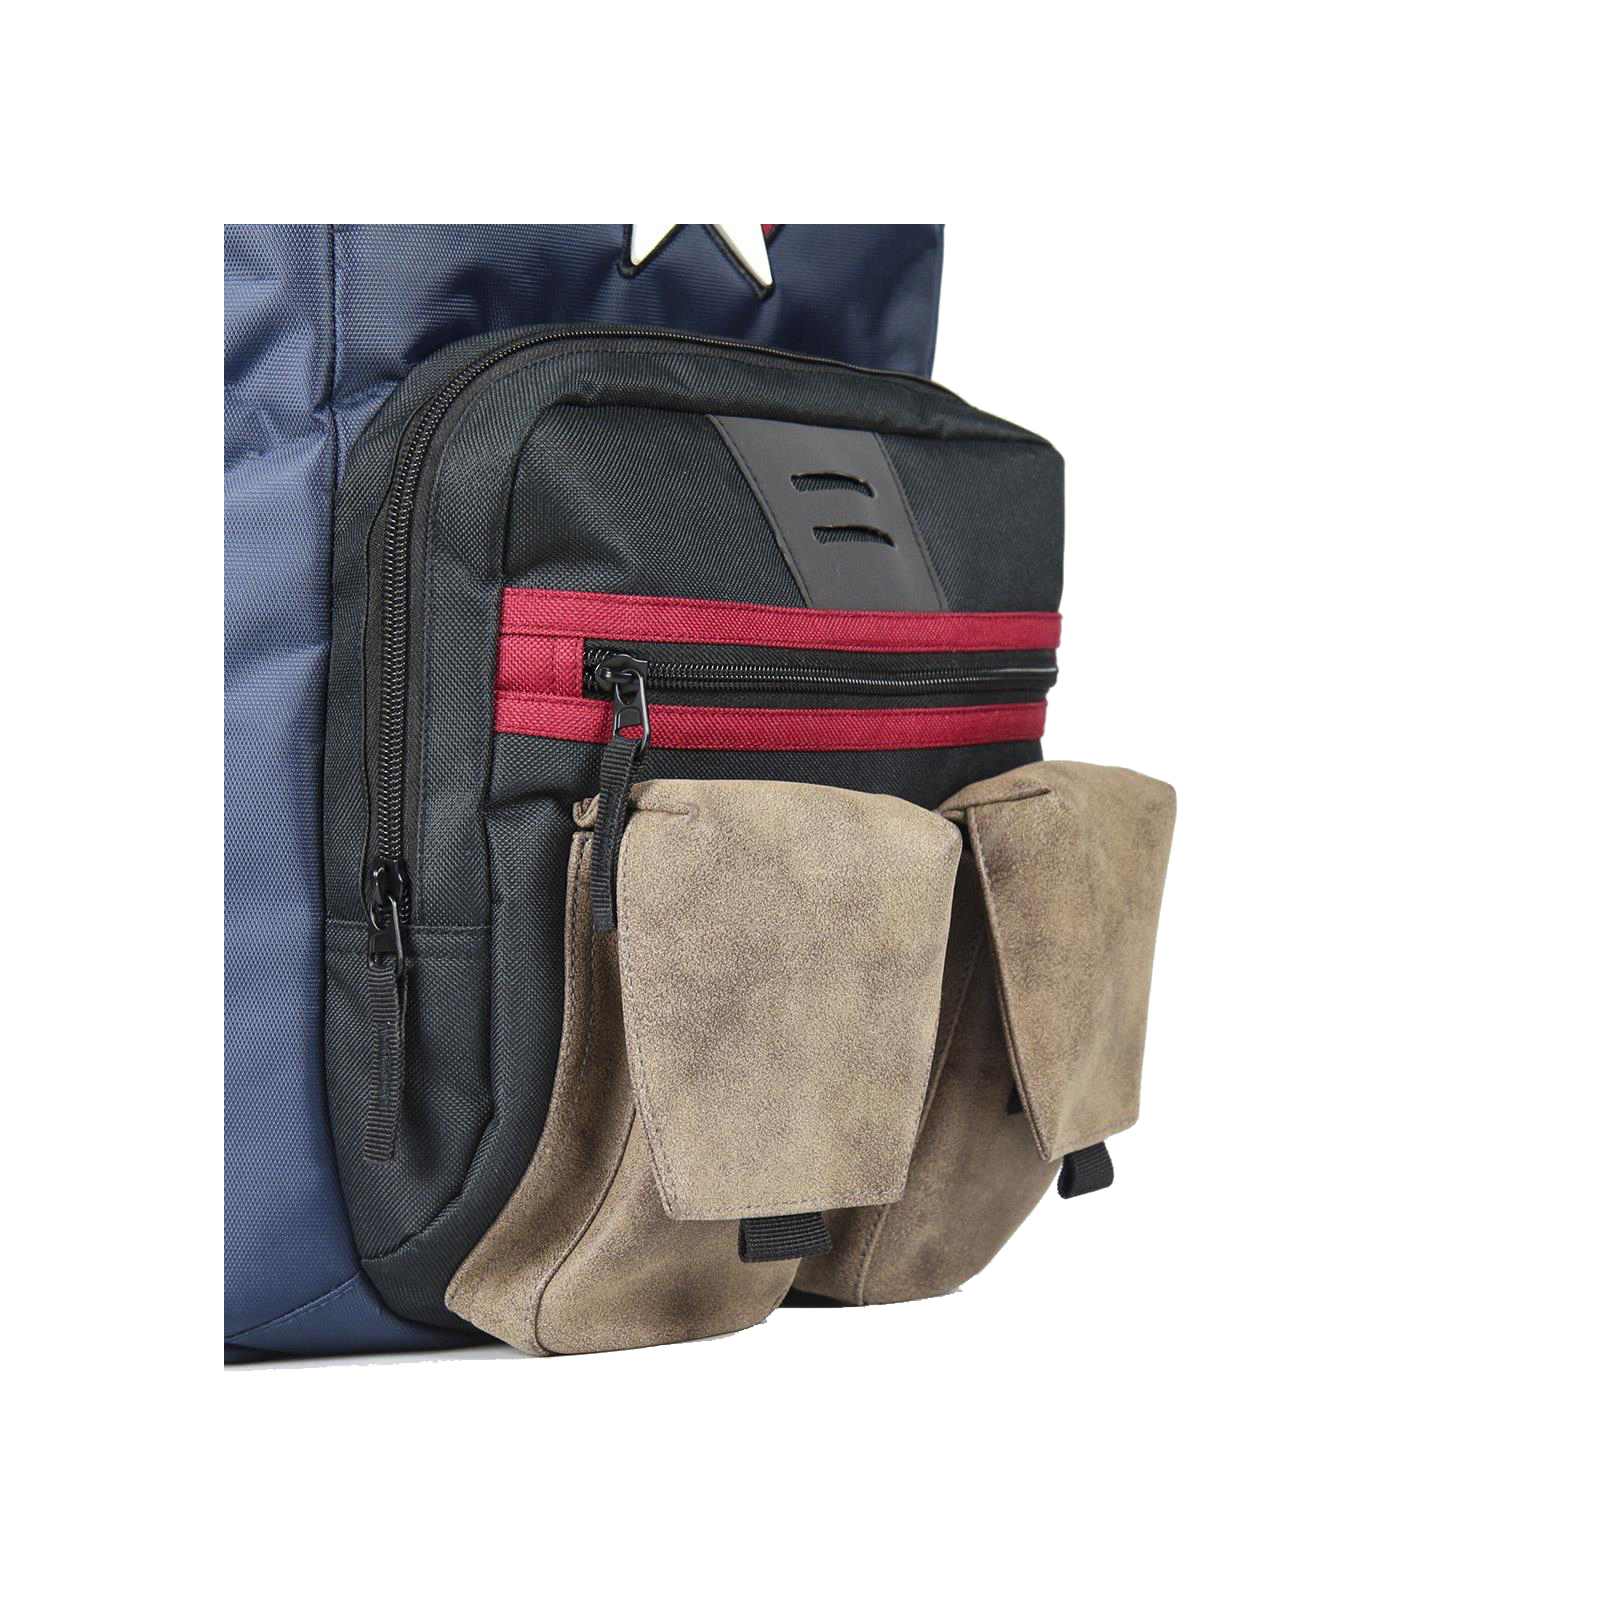 Рюкзак школьный Cerda Avengers - Capitan America Travel Backpack (CERDA-2100003081) изображение 3